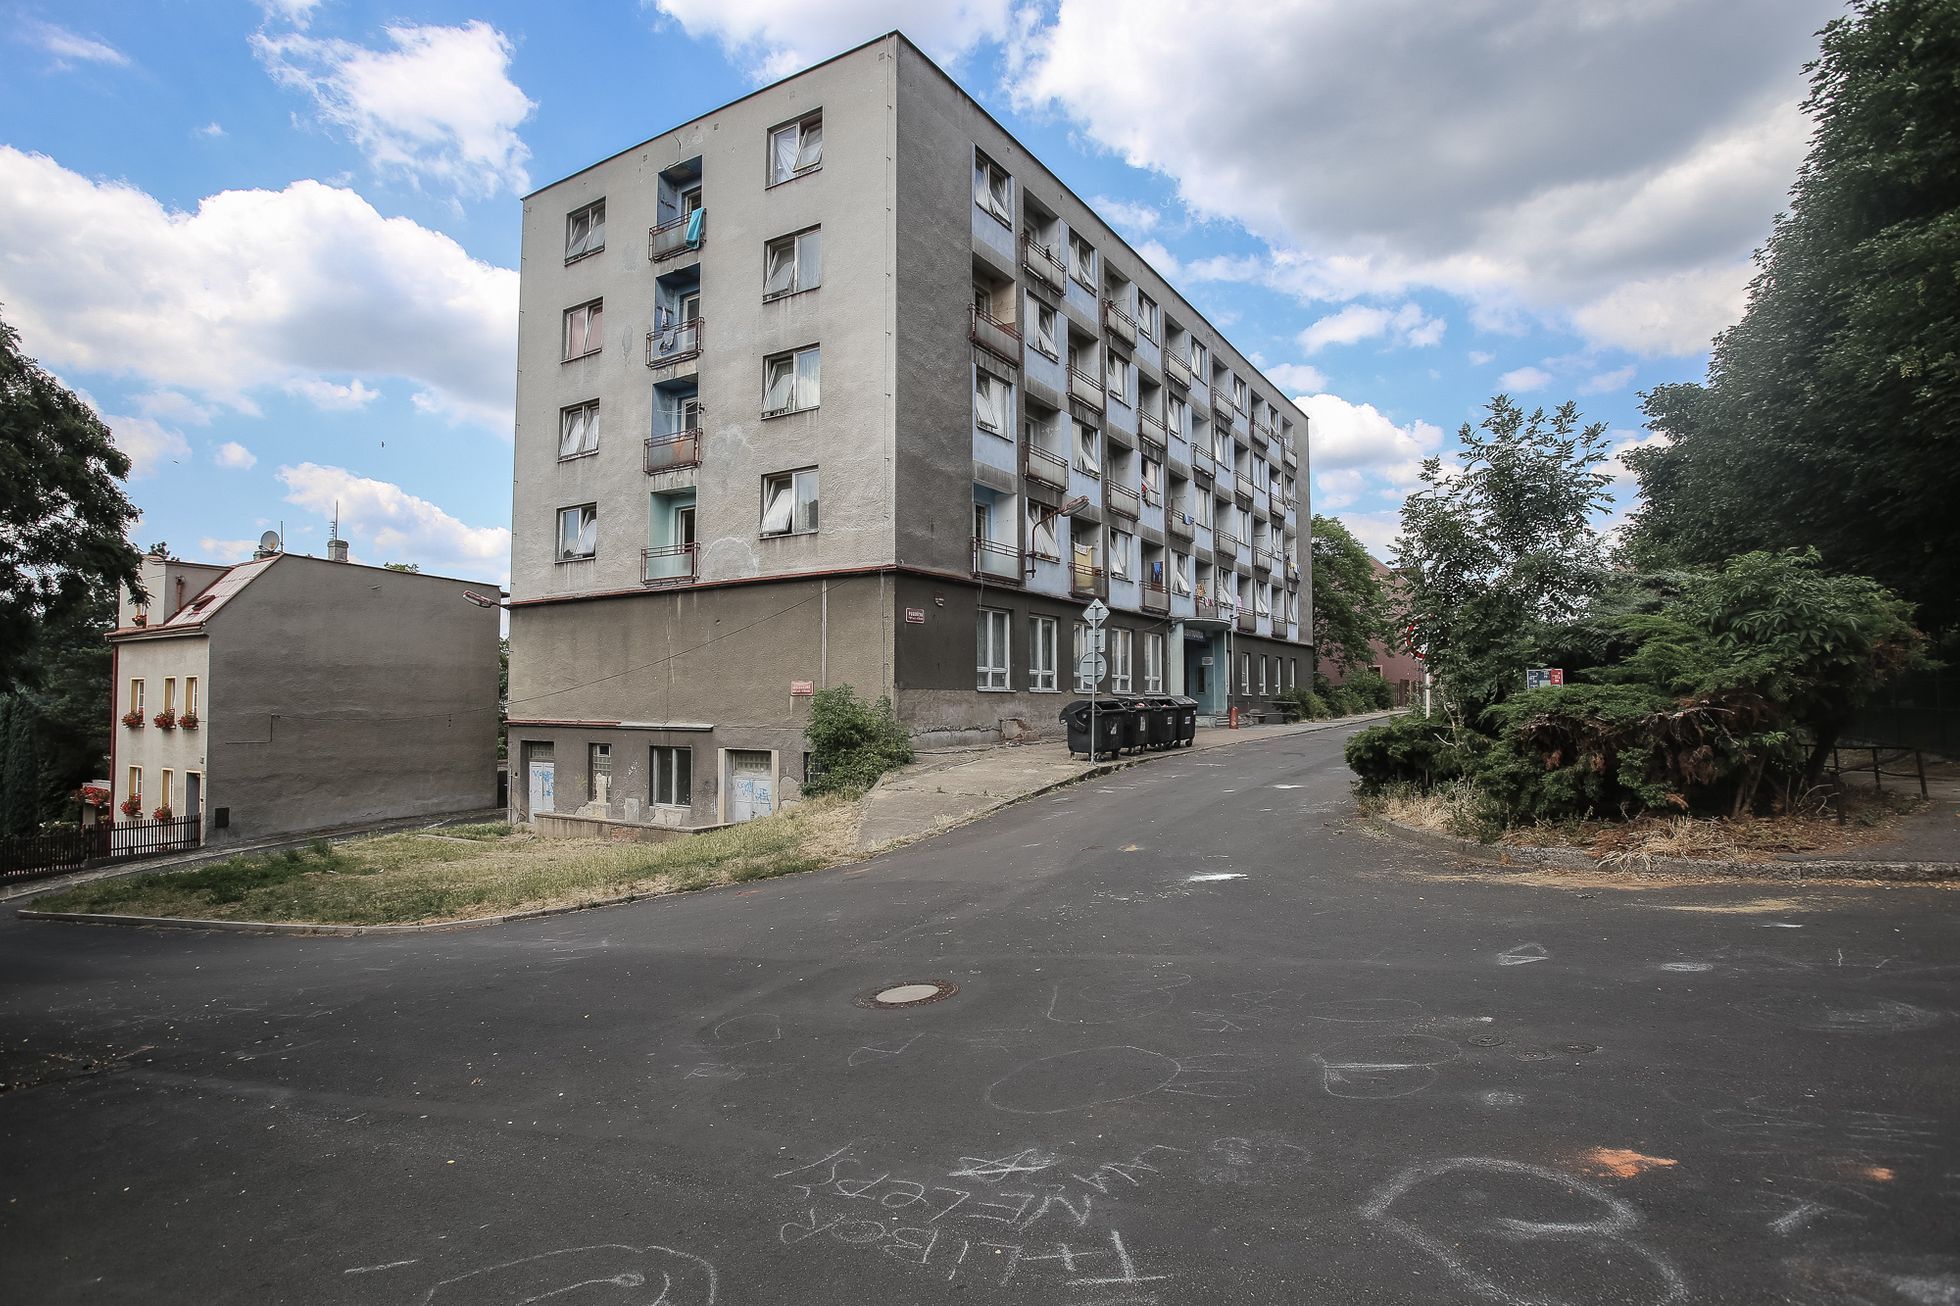 Dvě už brzy uzavřené ubytovny v Ústí nad Labem, jejich převážně romští obyvatelé a protest proti zavření